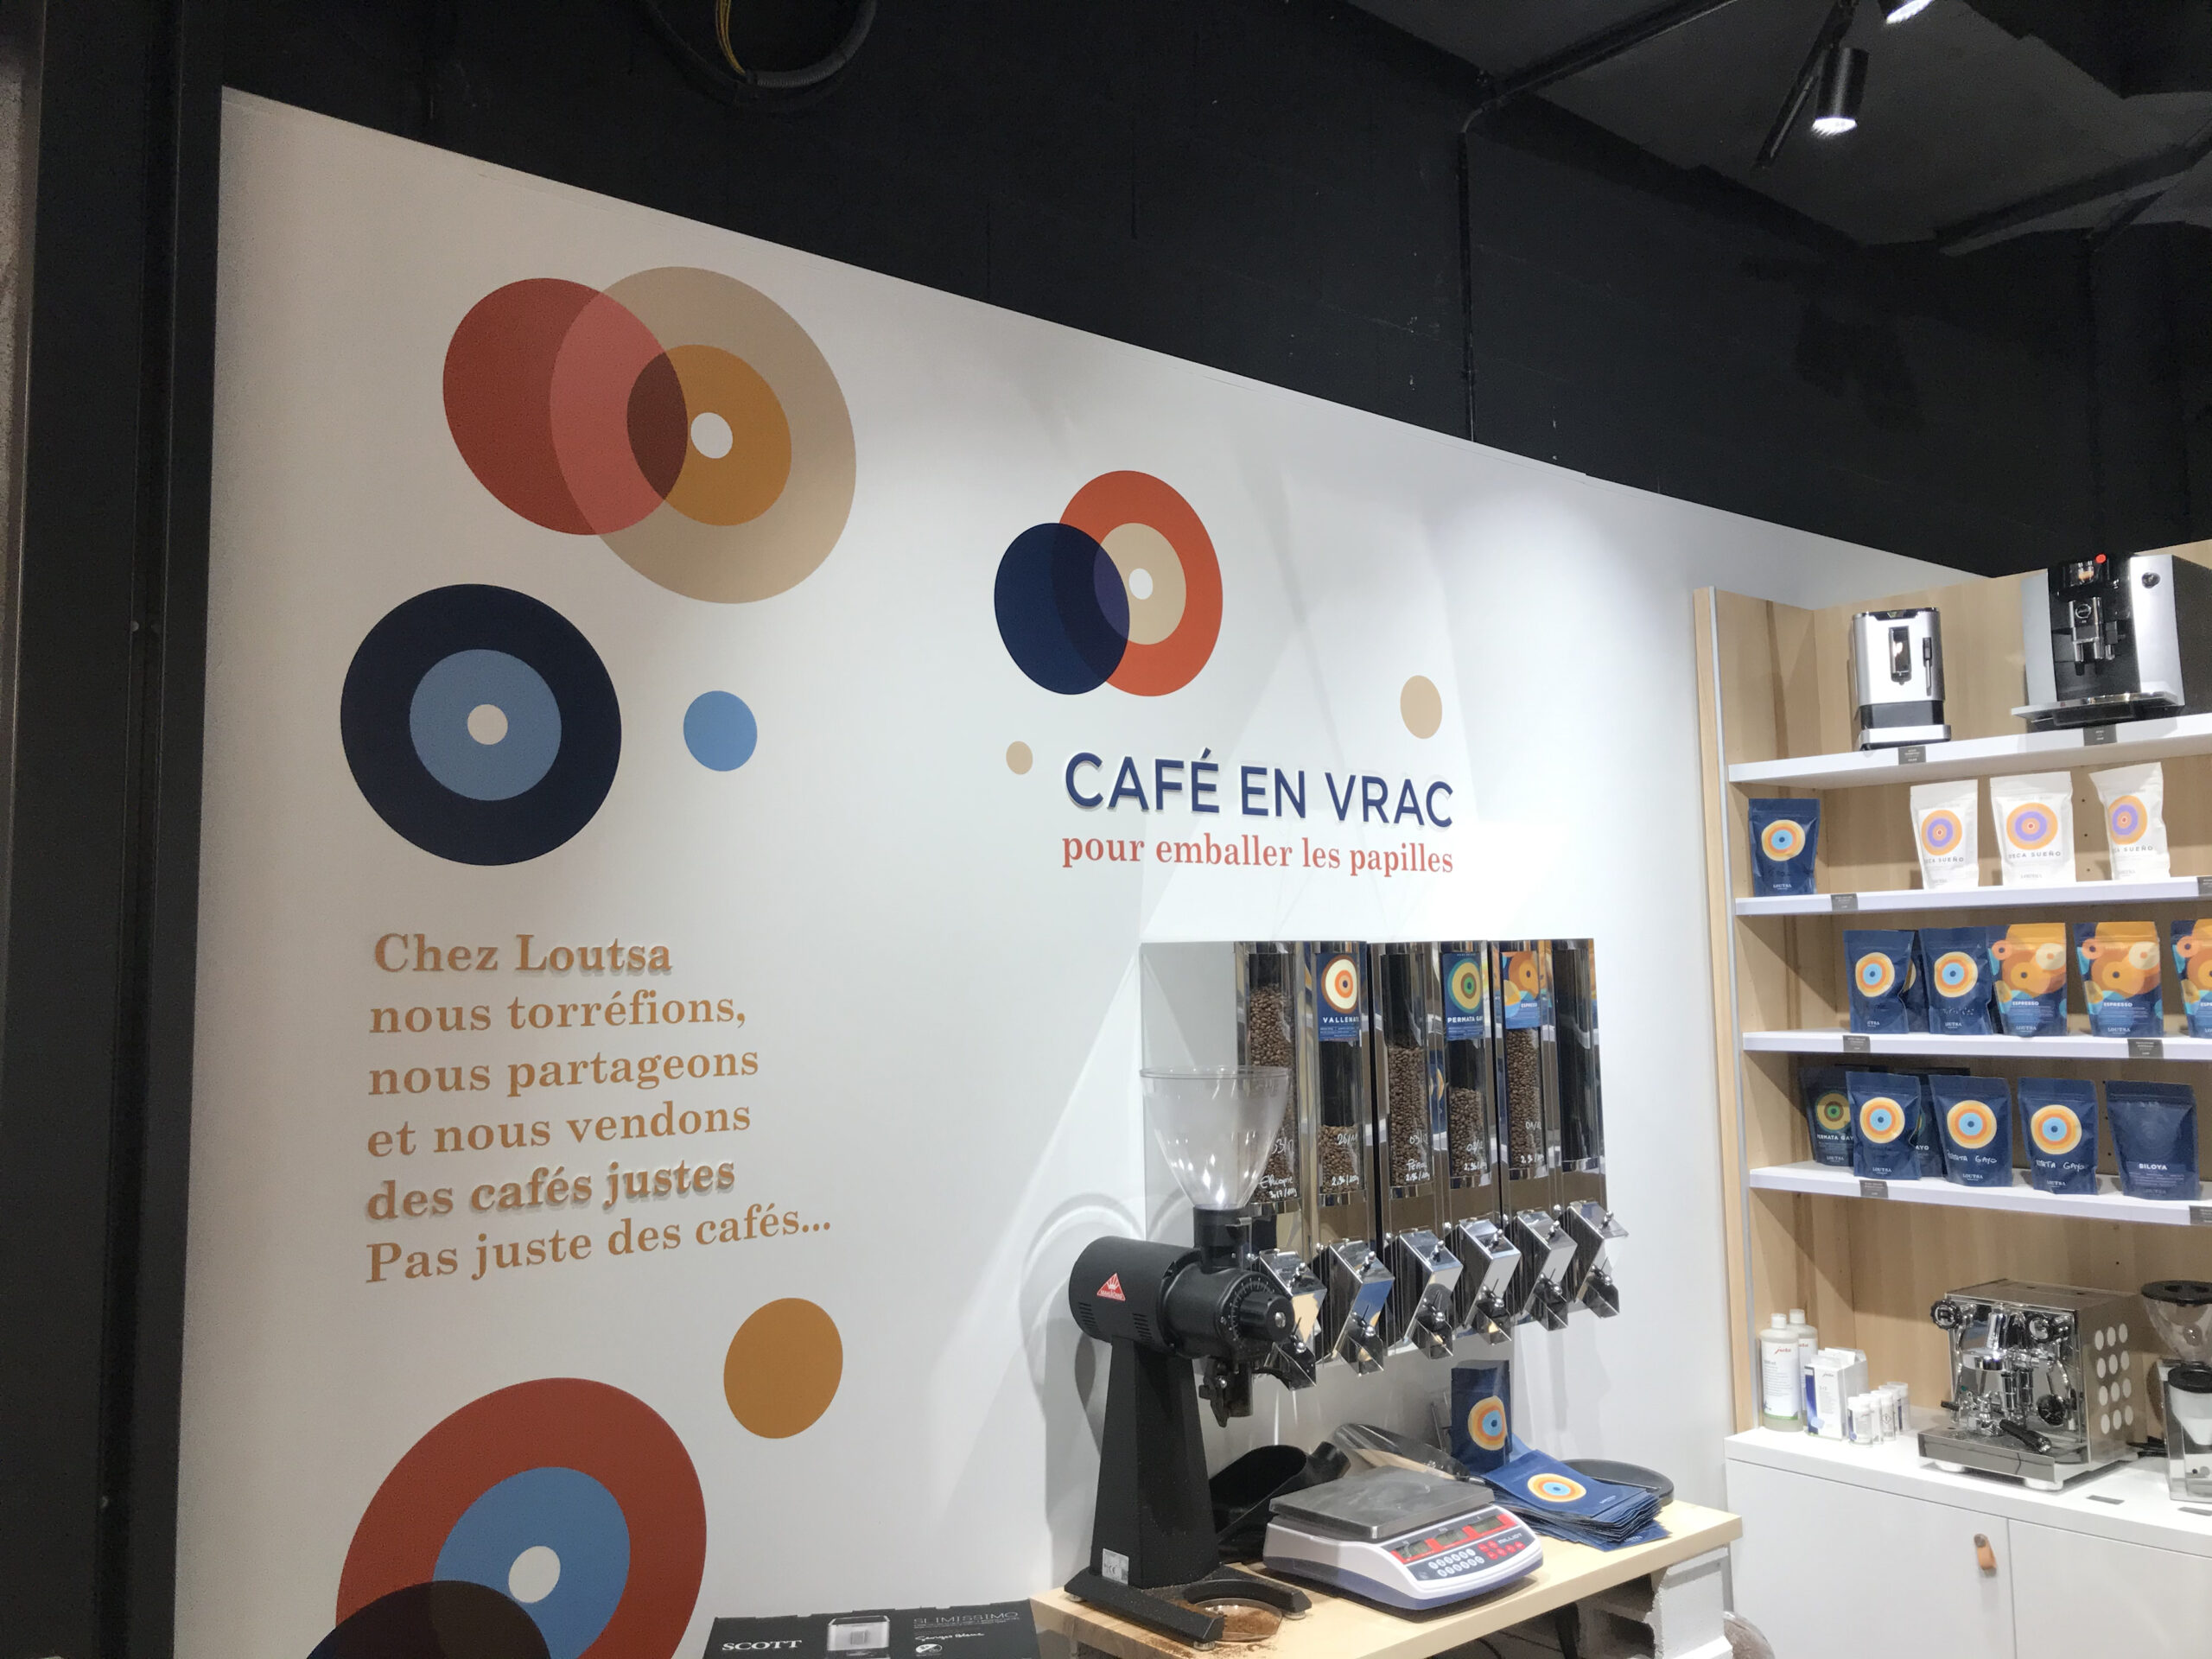 Réactualisation de devanture pour La Boulangerie Le Chalet - Atelier de  création de signalétique professionnelle près de Lyon - Pretext Infographie